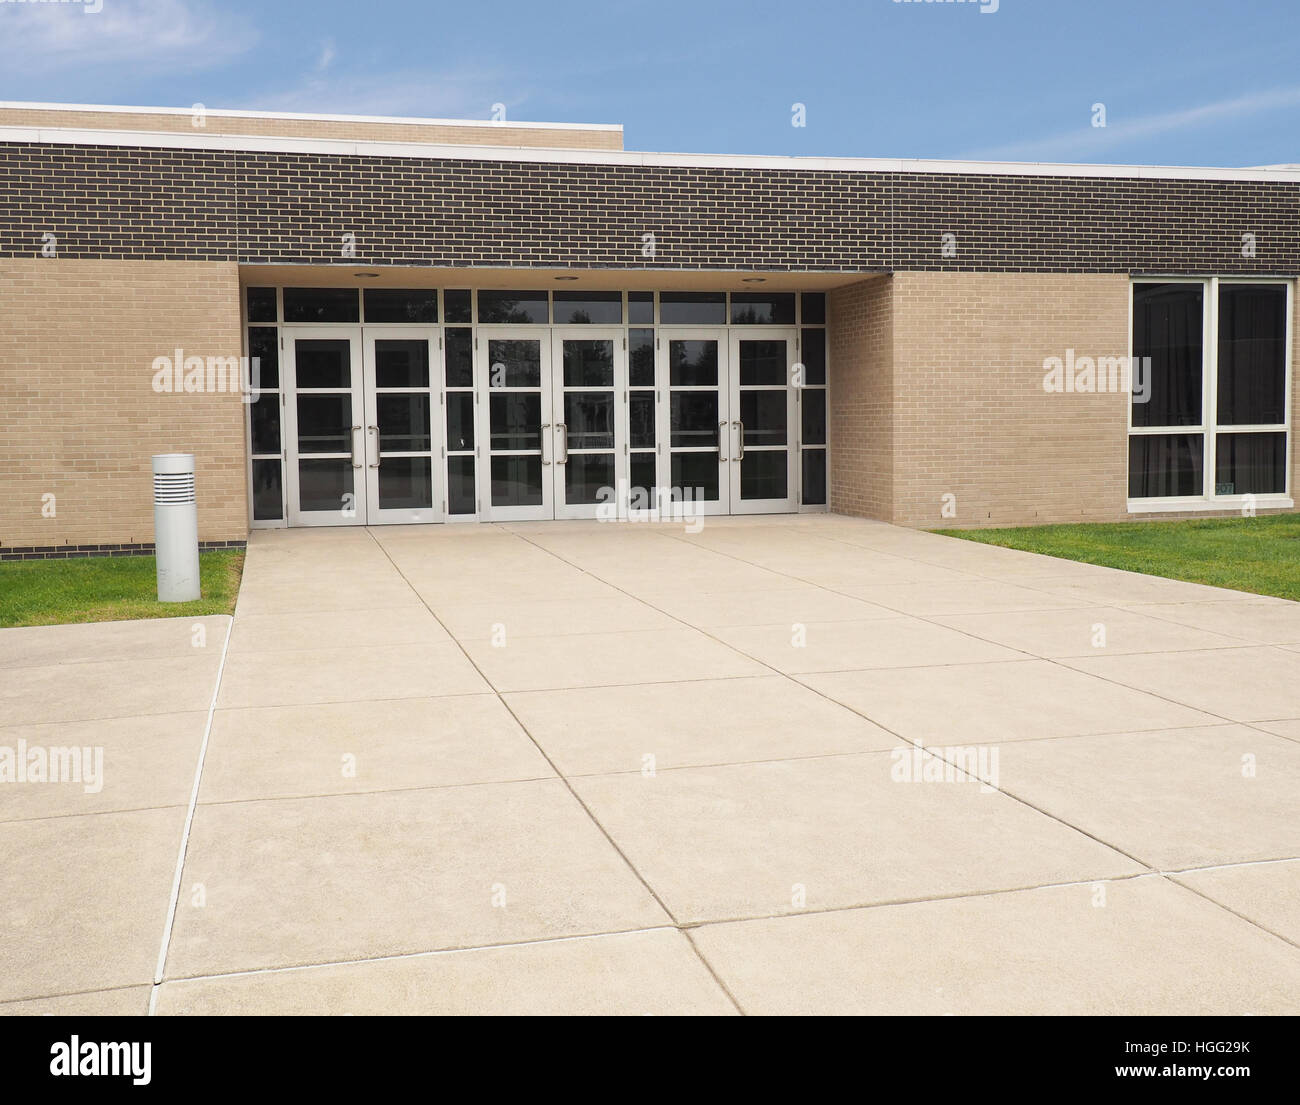 Haustüren für ein modernes Schulgebäude Stockfoto